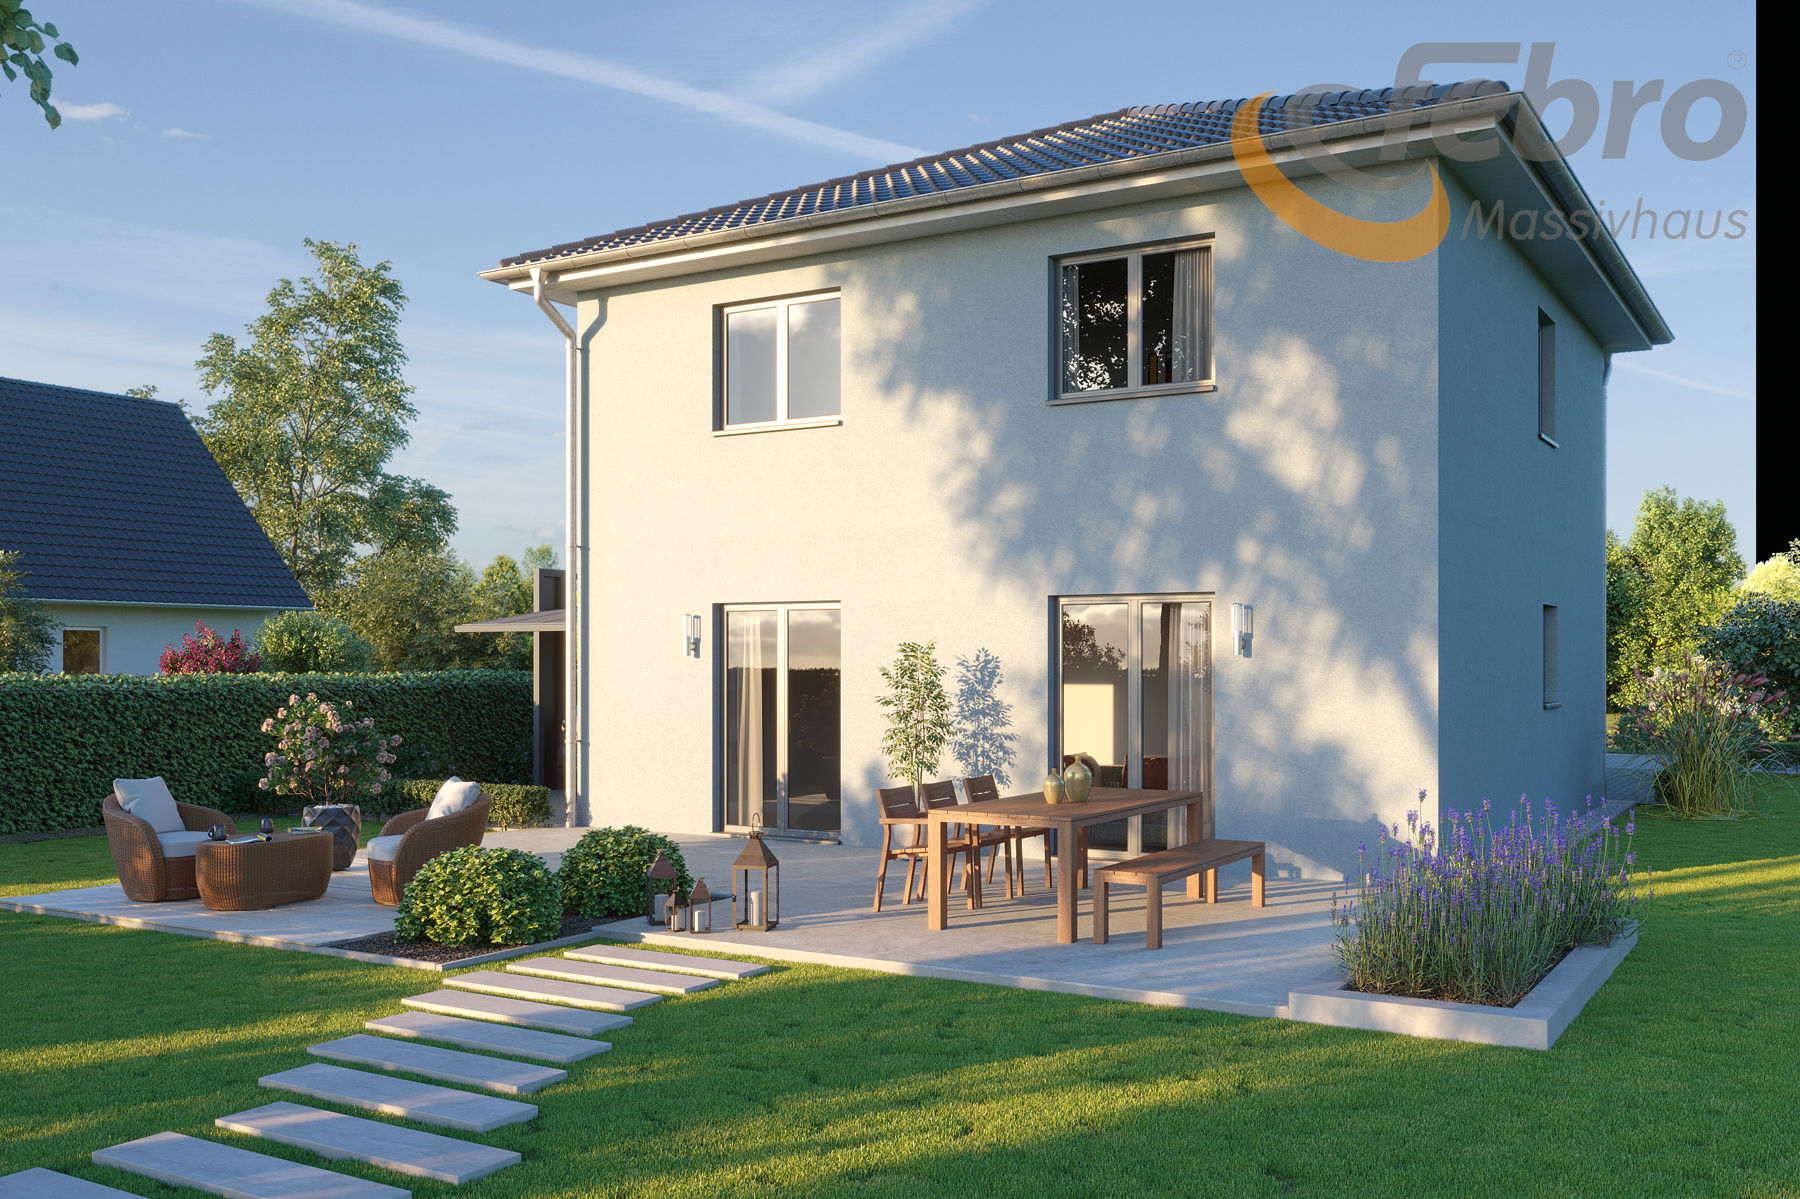 Haus Leben Sie Ihren Haustraum mit Febro Massivhaus - Herzlich willkommen im wunderschönen Naunhof.